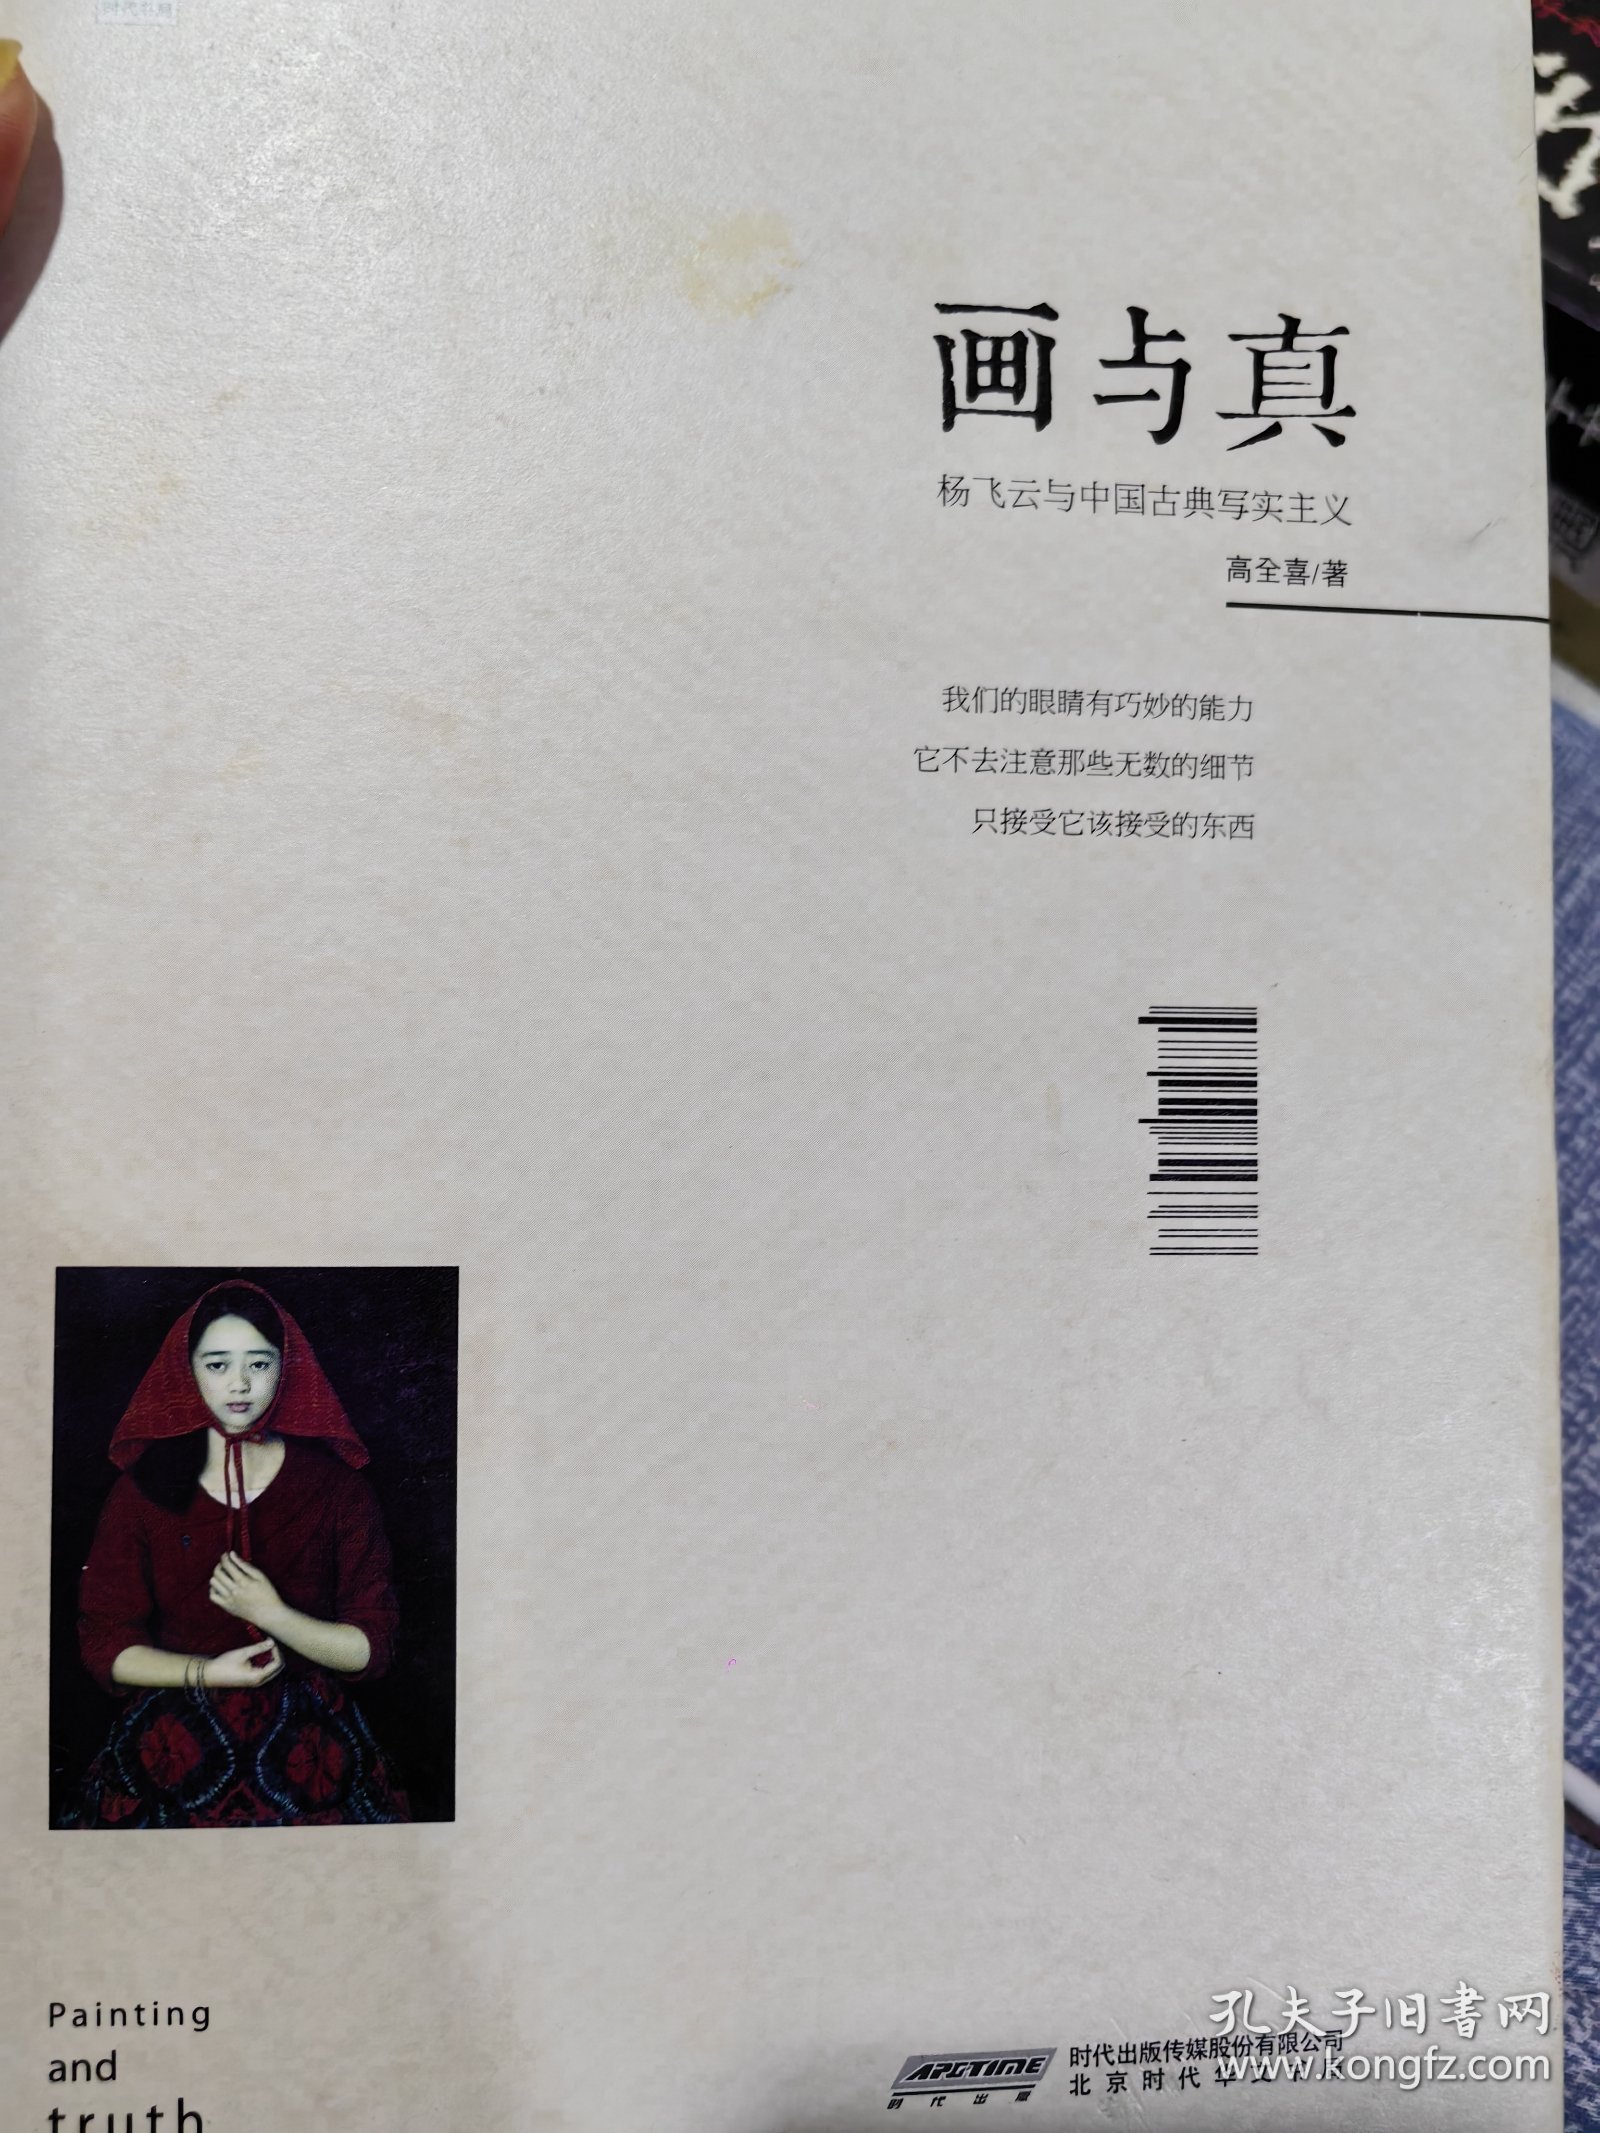 中国艺术研究院中国油画院院长杨飞云签名本《画与真:杨飞云与中国古典写实主义》